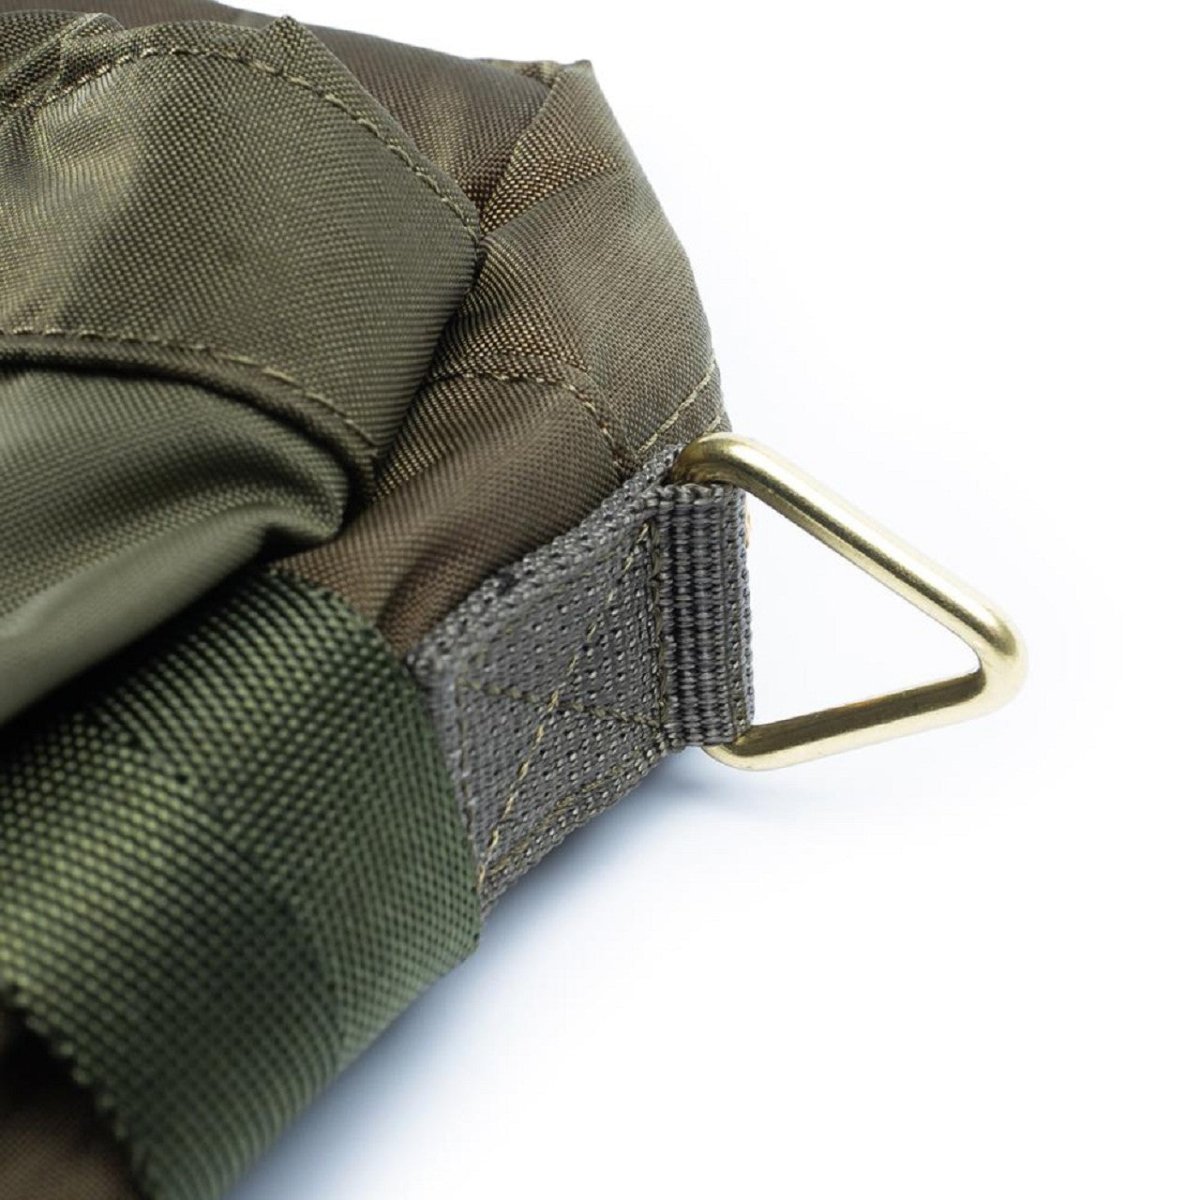 Porter by Yoshida Force Series Shoulder Bag (Olive)  - Allike Store